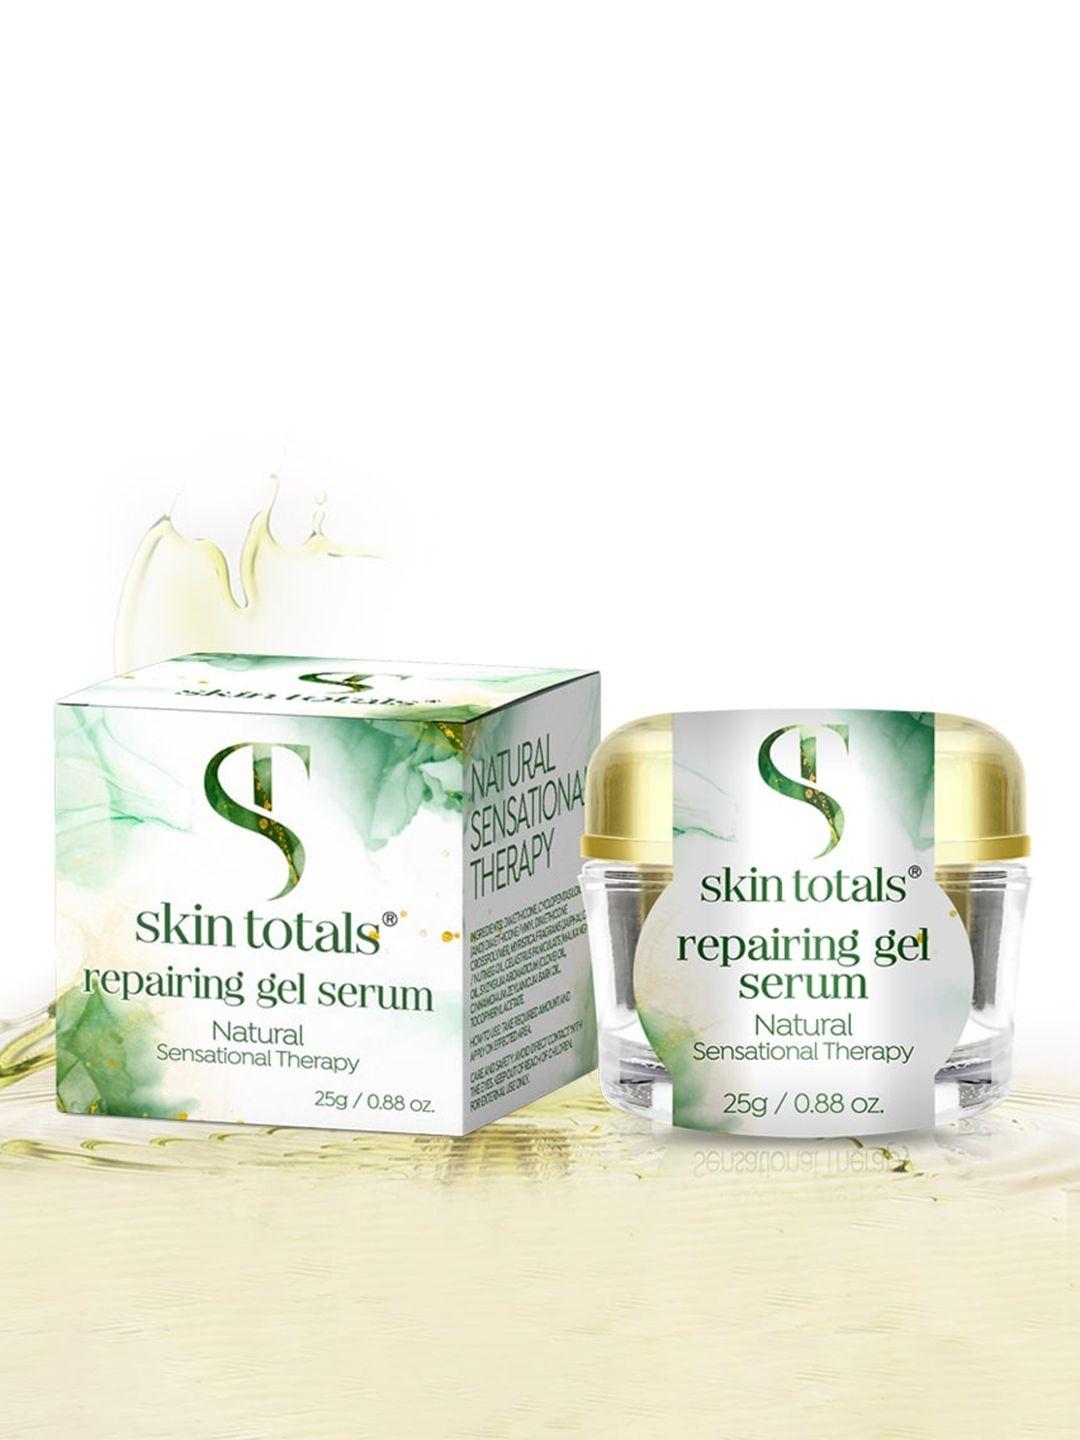 beautyrelay london skin totals repairing gel serum for sensational therapy - 25g